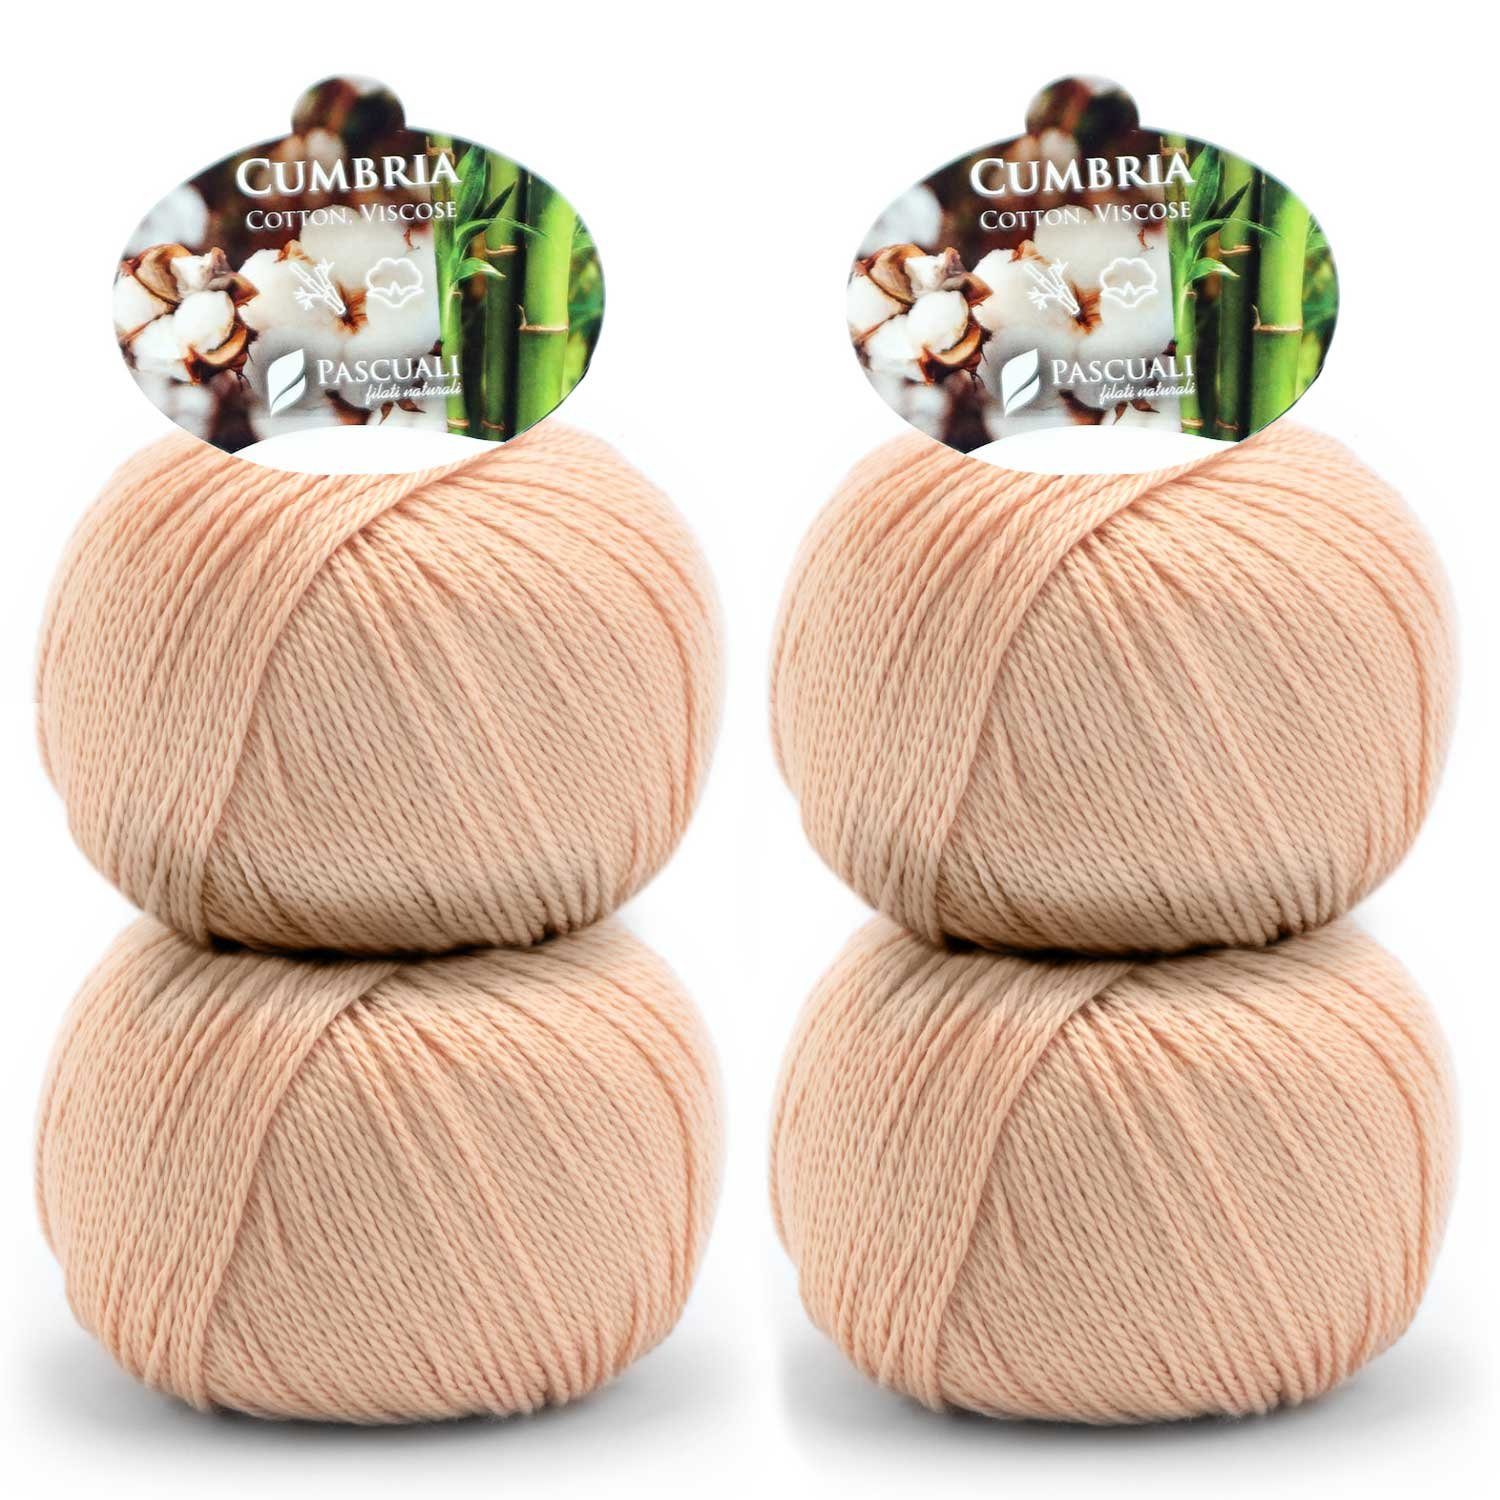 Pascuali 4 x 50g Pascuali Cumbria. Vegan Strickwolle aus Baumwolle und Bambus Viskose Wolle zum Stricken und Häkeln Häkelwolle